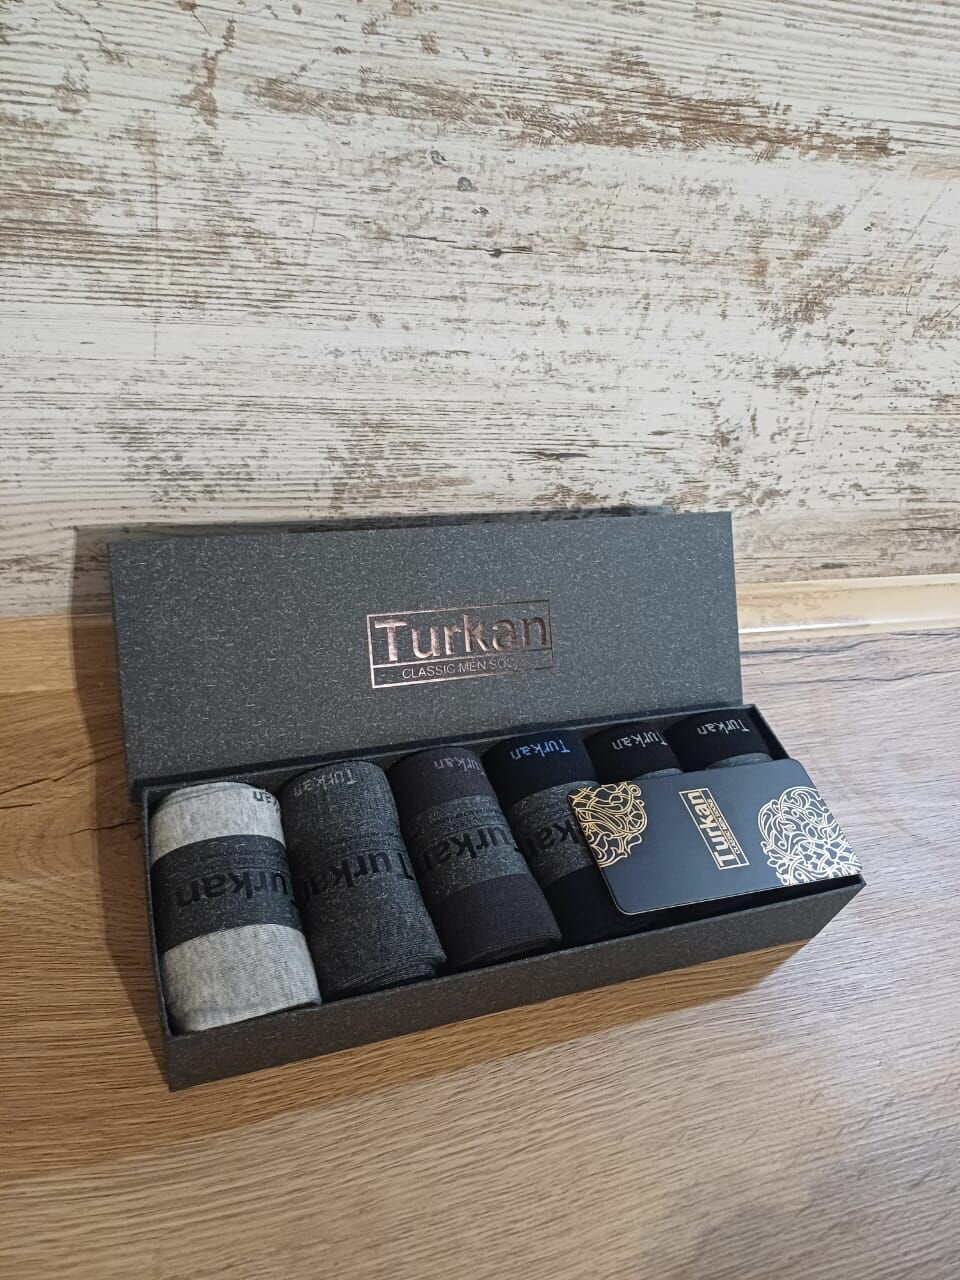 Носки Turkan Носки Turkan Туркан гифт, 6 пар, размер 41/47, серый, темно-серый, черный, синий